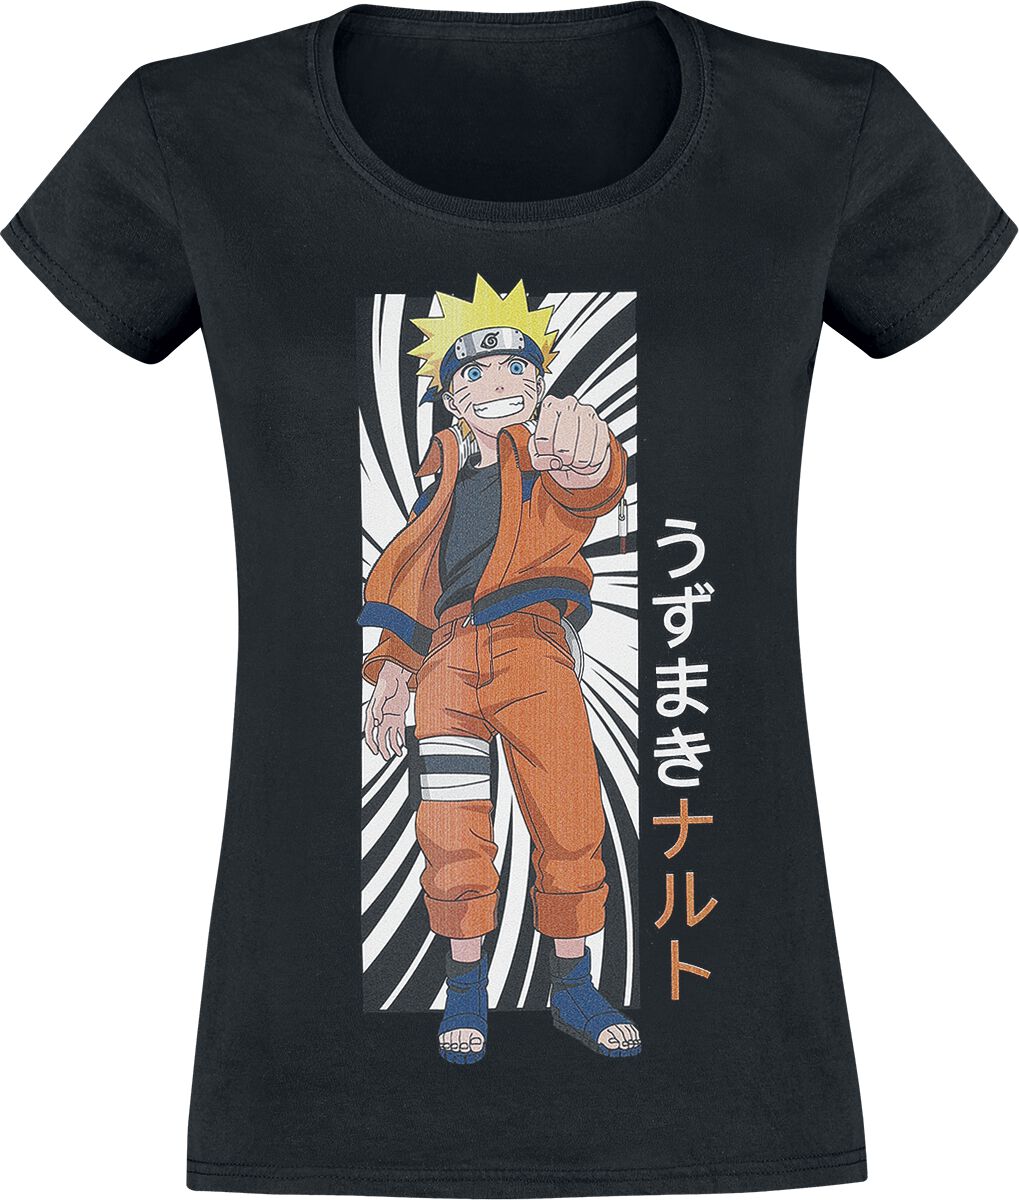 T-Shirt Manches courtes de Naruto - Uzumaki - S à XL - pour Femme - noir